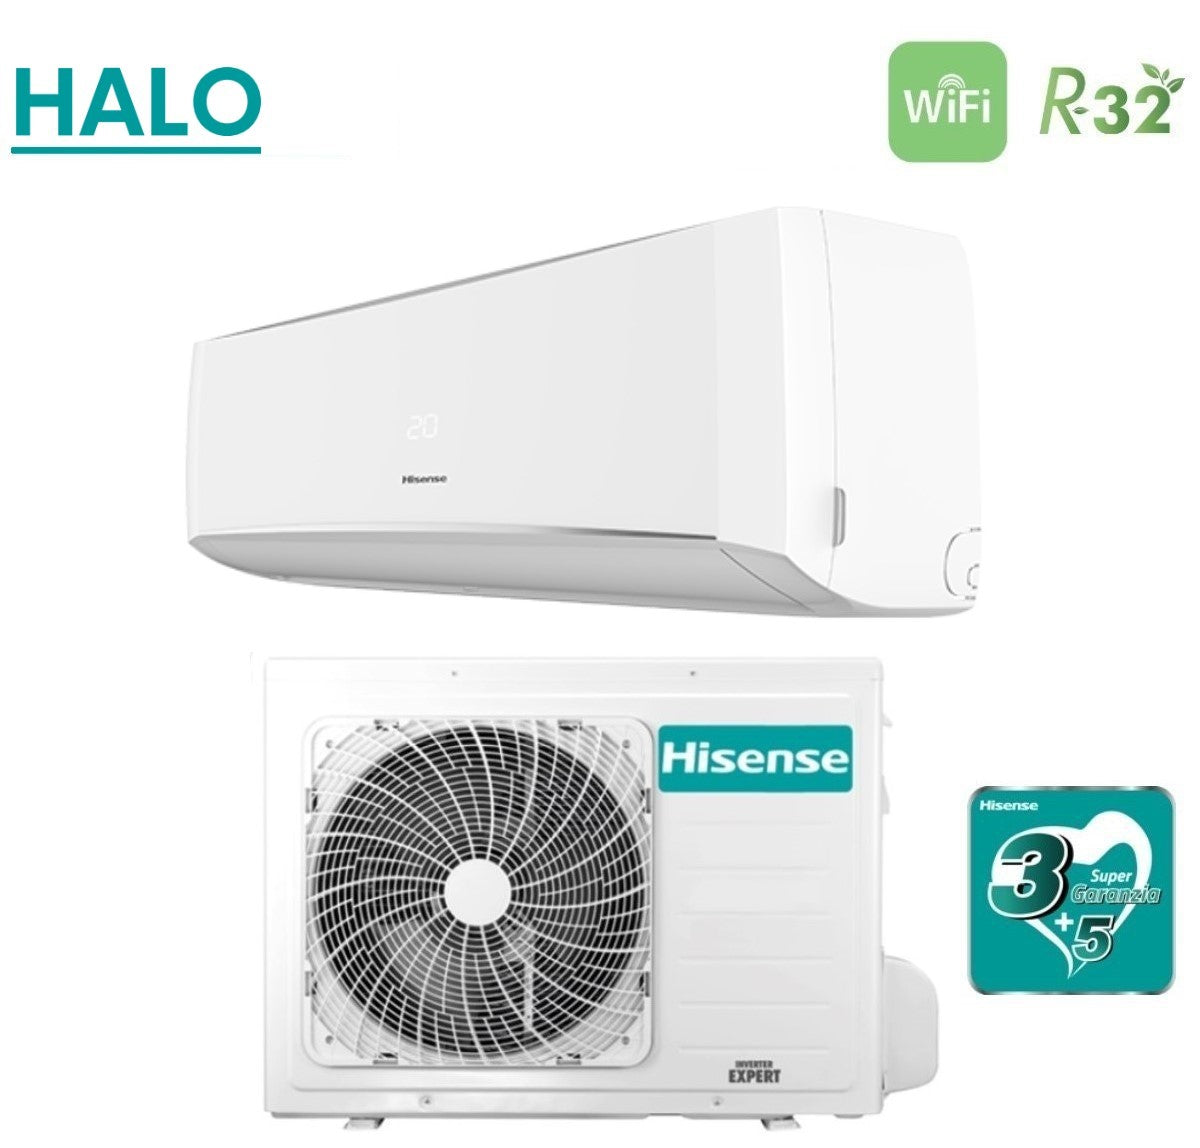 immagine-3-hisense-climatizzatore-condizionatore-hisense-inverter-serie-halo-12000-btu-cbyr1203g-r-32-wi-fi-optional-aa